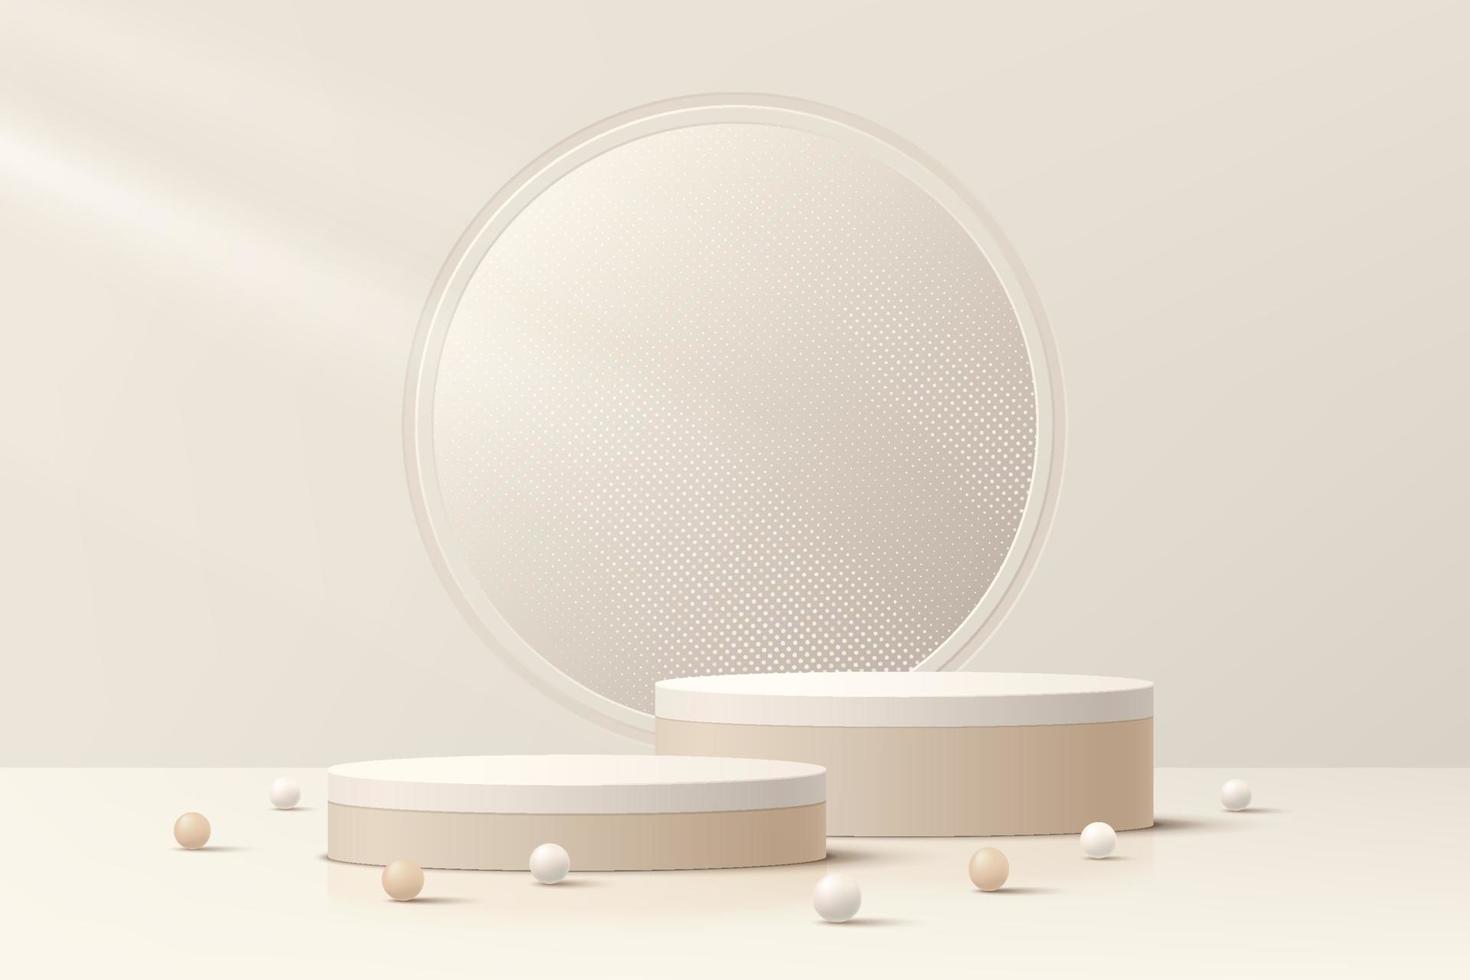 conjunto de pódio de pedestal de cilindro marrom claro 3d abstrato realista e brilho brilhante na janela do círculo. cena mínima para apresentação de exibição do produto. design de plataforma geométrica vetorial. vitrine de palco. vetor